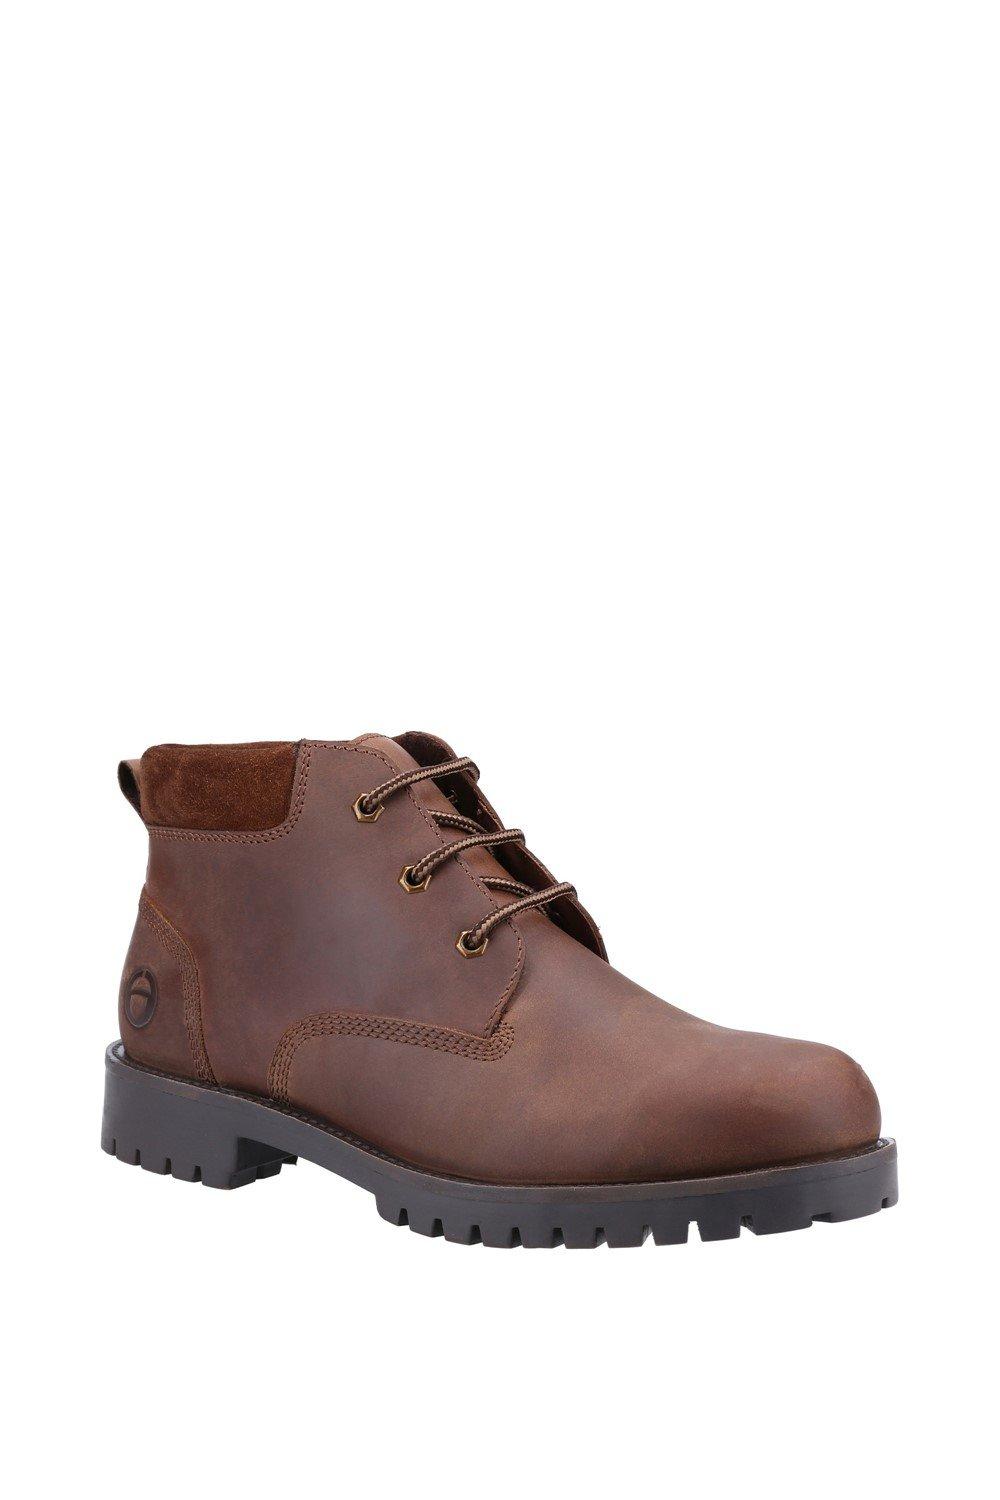 Кожаные ботинки 'Banbury' Cotswold, коричневый